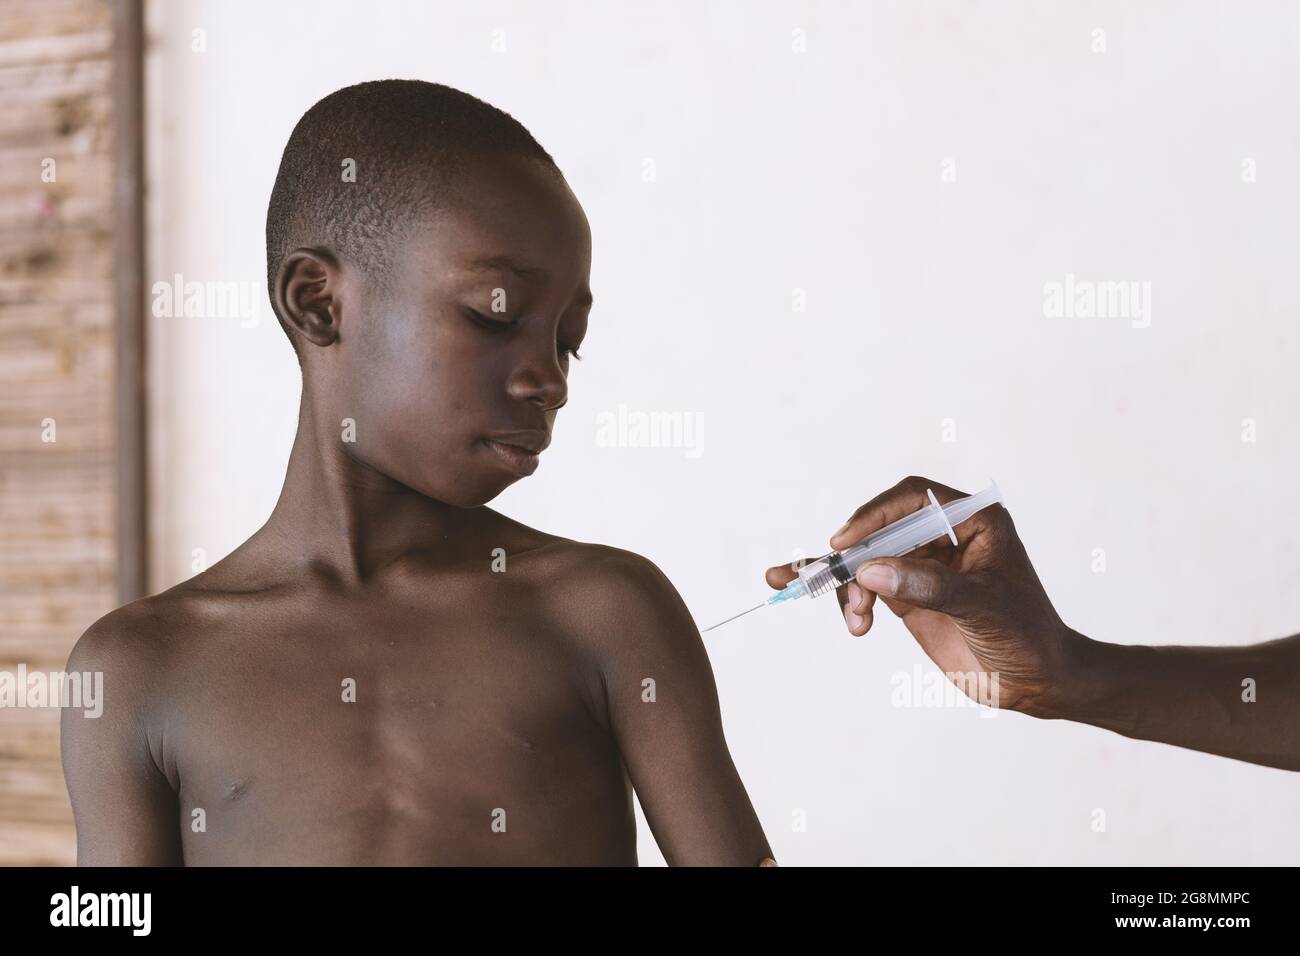 Questa è un'immagine di un giovane ragazzo nero africano che riceve una vaccinazione infantile a Bamako, Mali. Foto Stock